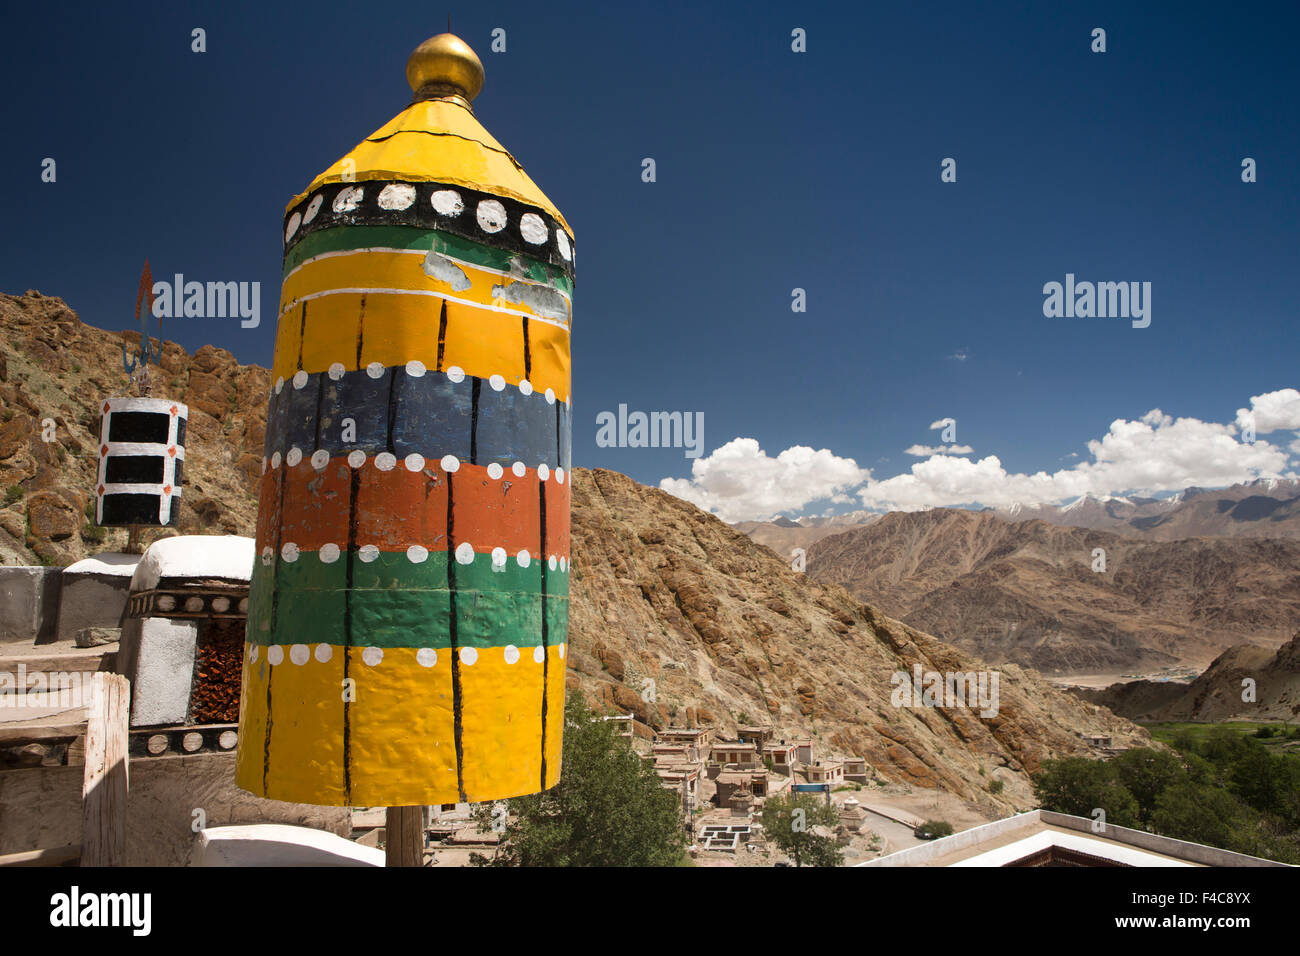 Indien, Jammu & Kashmir, Ladakh, Hemis Gompa Kloster, symbolische buddhistischen Charta Dach auf Dach Stockfoto